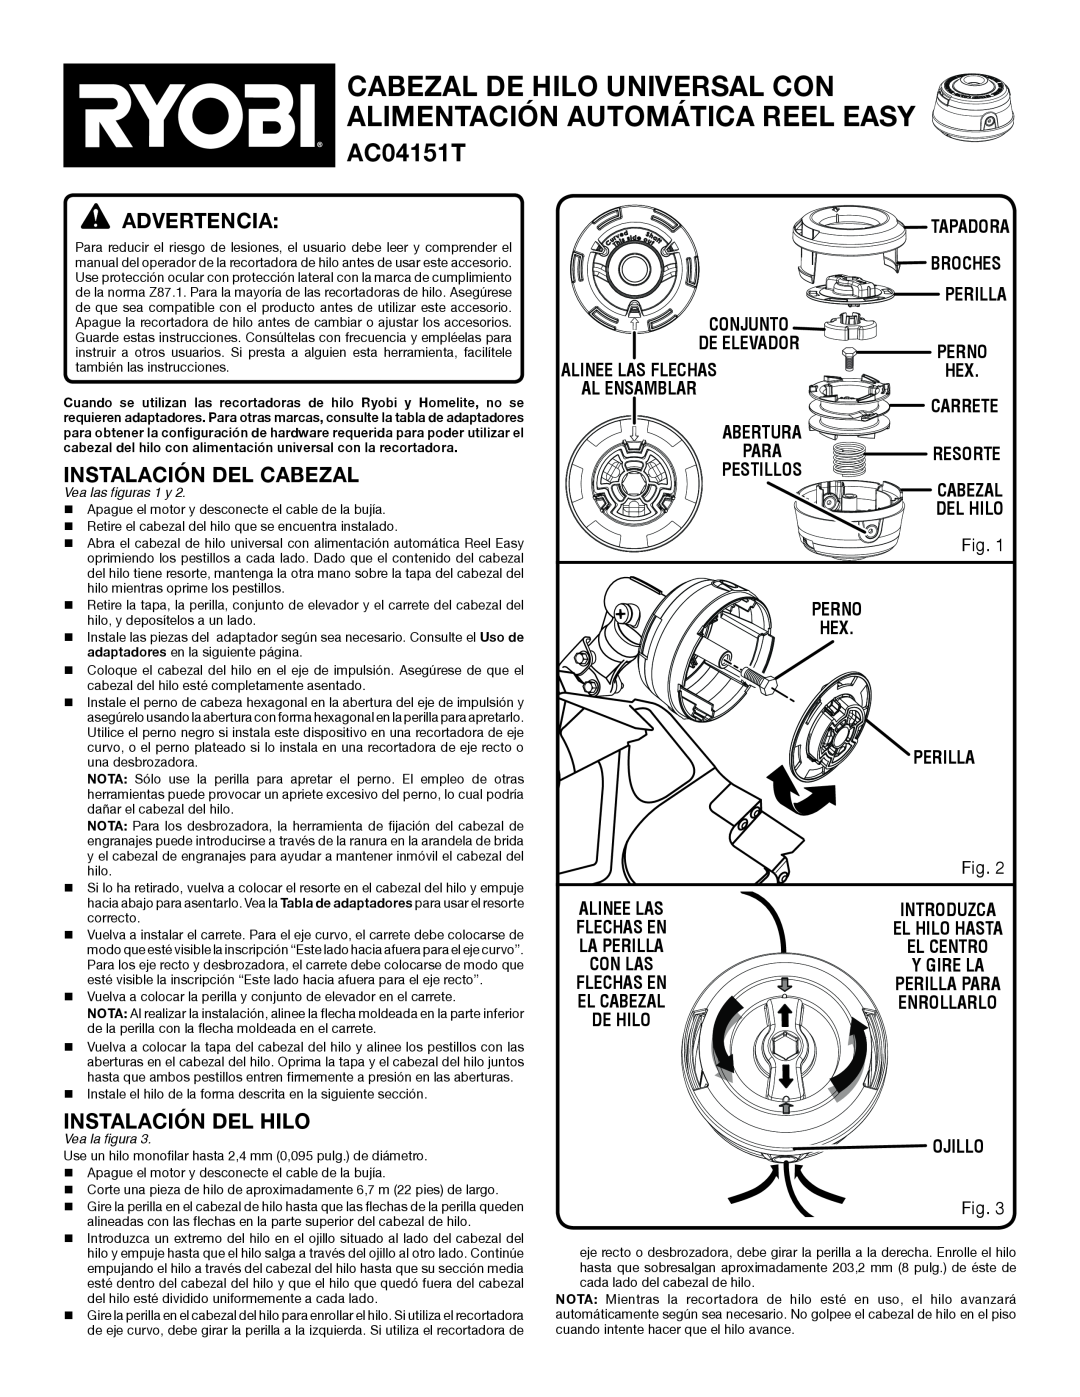 Ryobi AC04151T manual advertencia, Instalación Del Cabezal, Instalación Del Hilo 